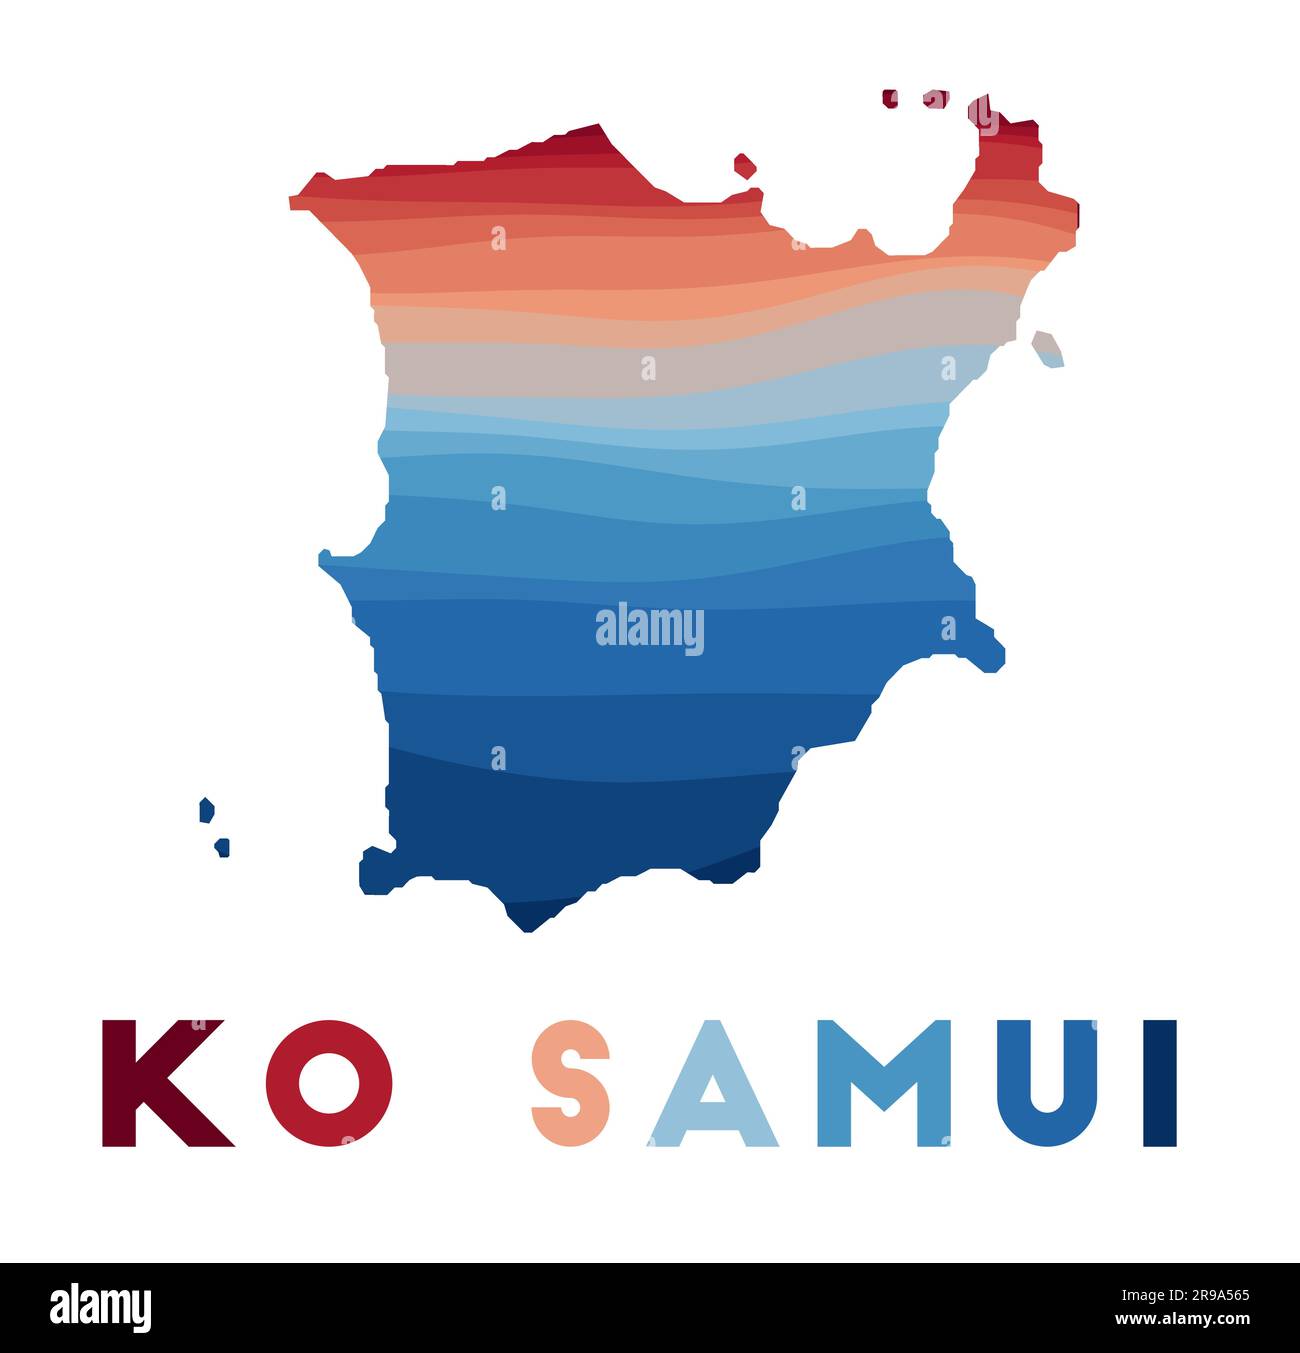 Ko Samui Karte. Karte der Insel mit wunderschönen geometrischen Wellen in rot-blauen Farben. Lebendige Ko Samui-Form. Vektordarstellung. Stock Vektor